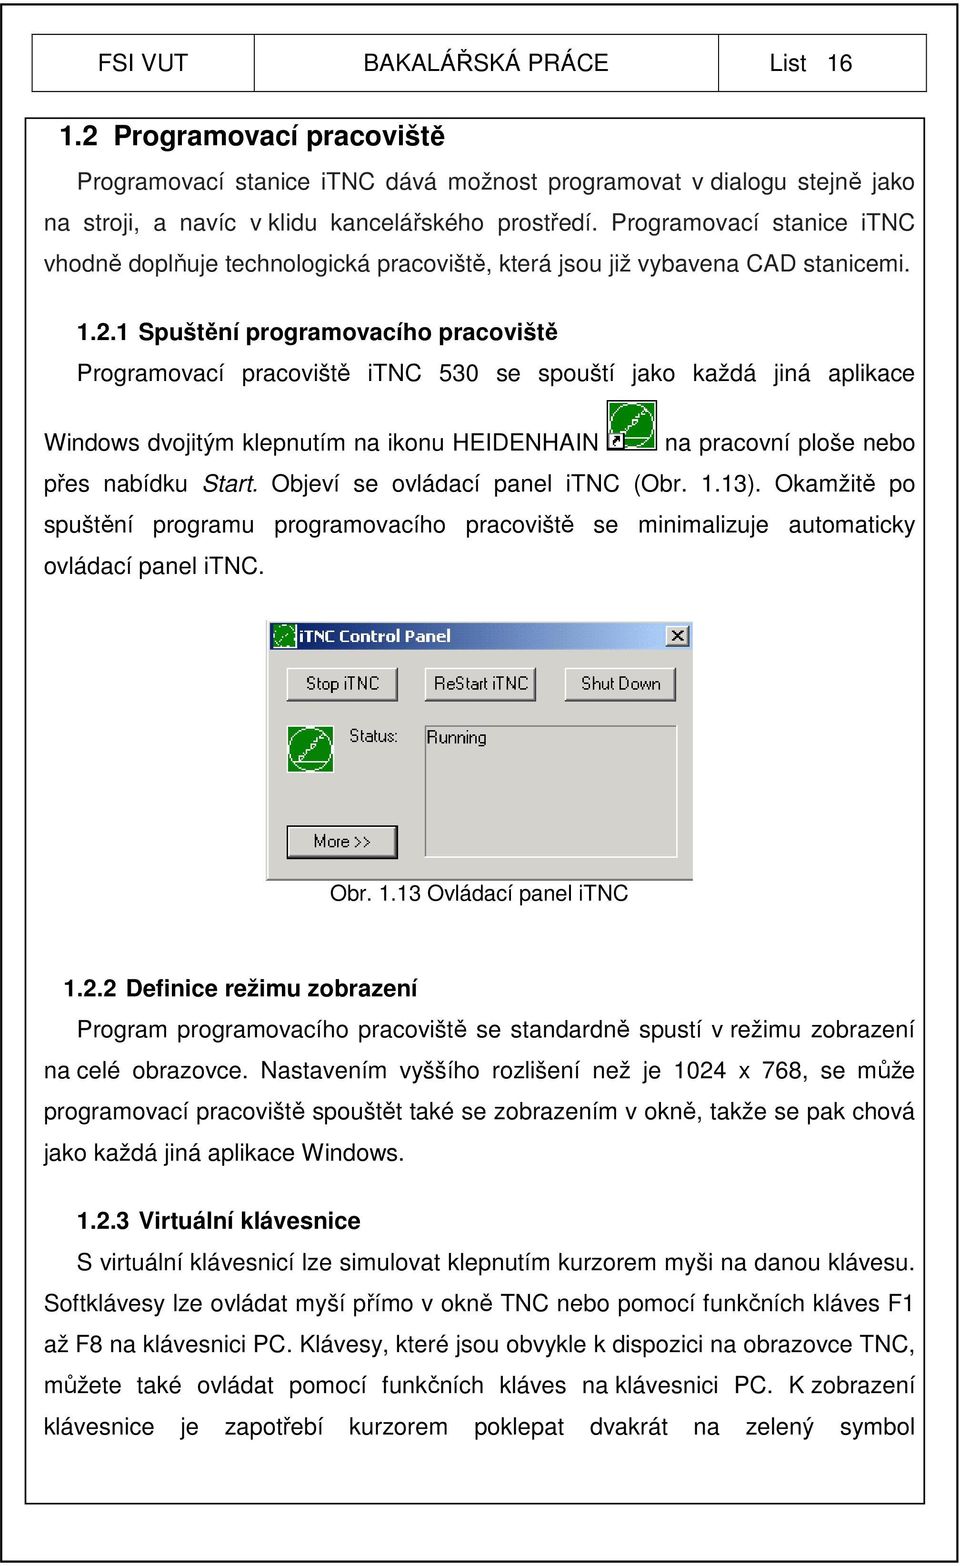 1 Spuštění programovacího pracoviště Programovací pracoviště itnc 530 se spouští jako každá jiná aplikace Windows dvojitým klepnutím na ikonu HEIDENHAIN na pracovní ploše nebo přes nabídku Start.